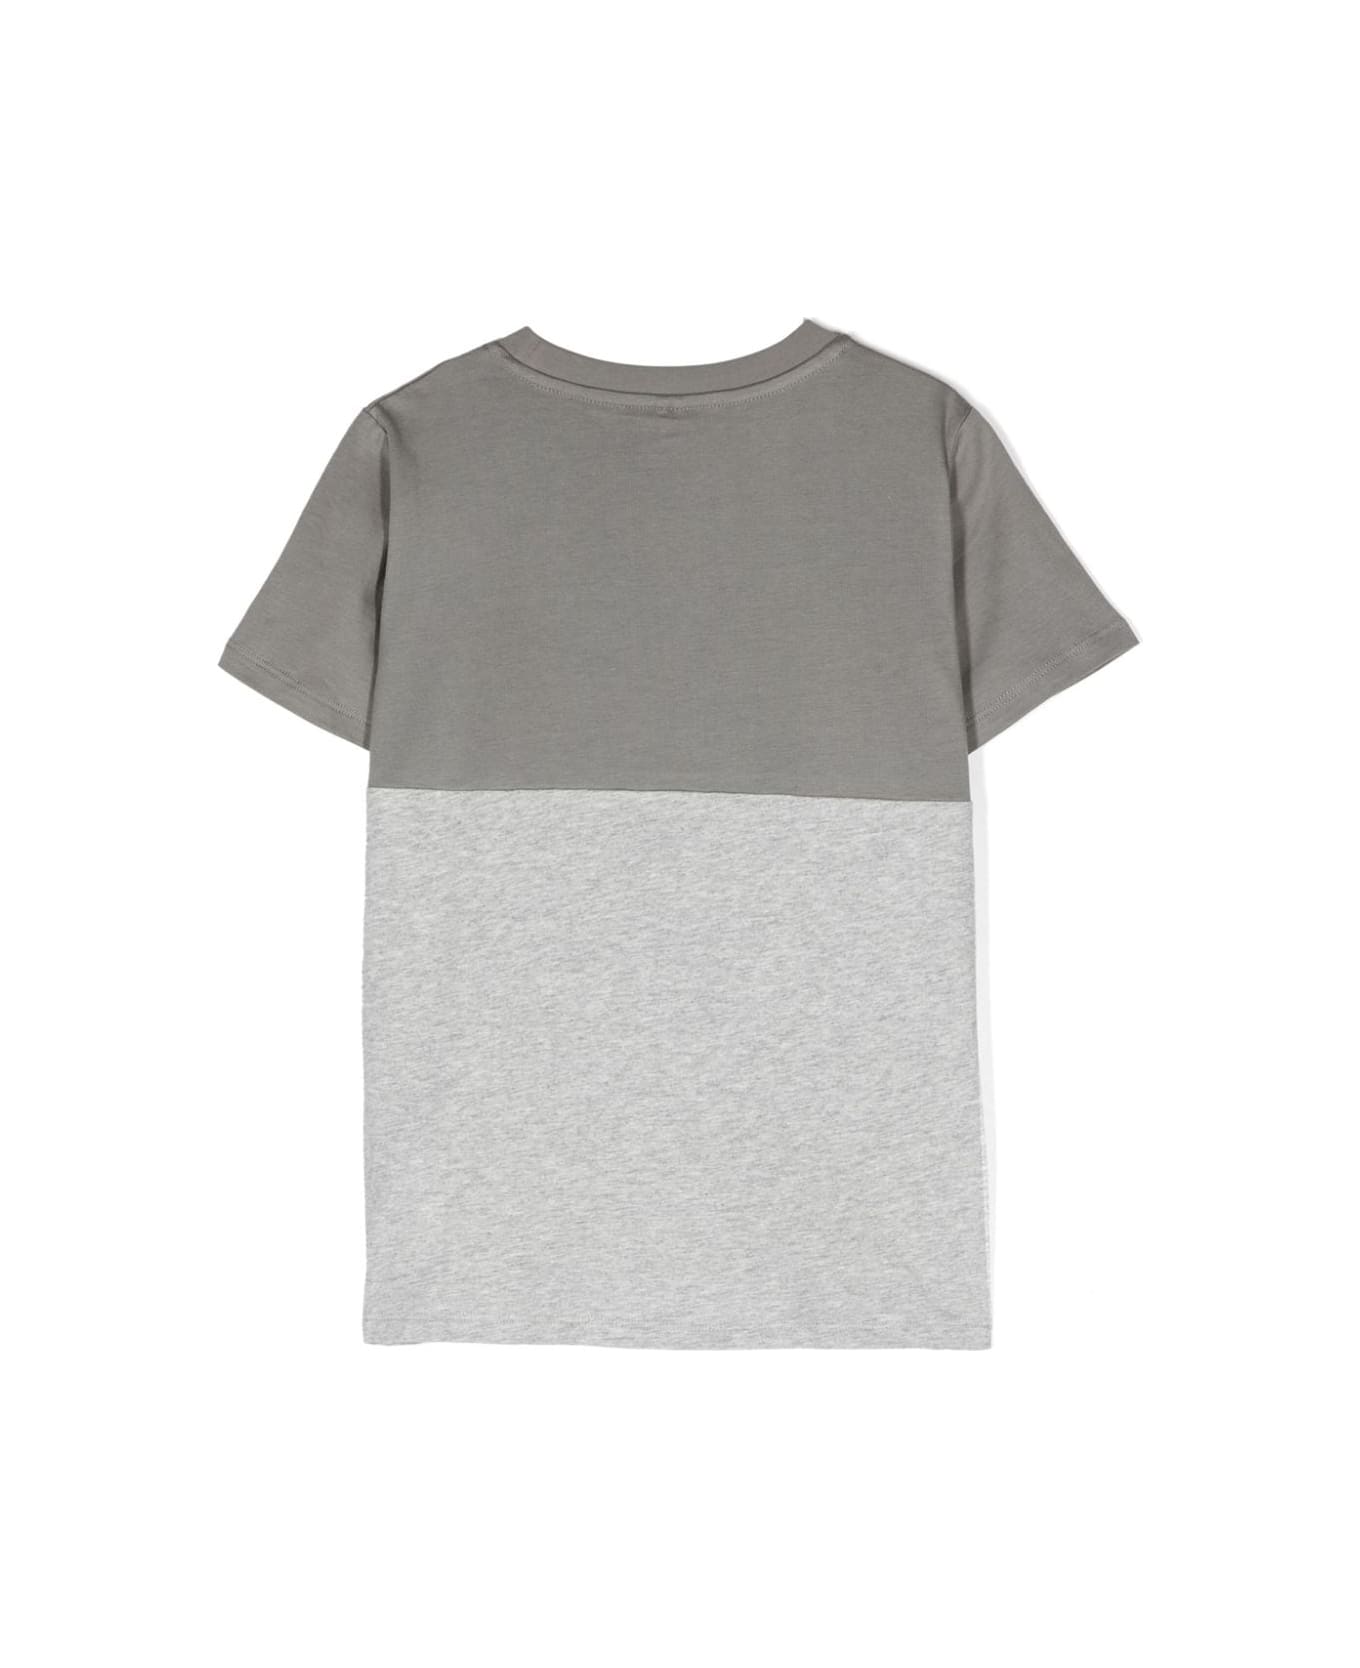 Stella McCartney Kids Shark Face Colourblock T-shirt In Grey - Grey